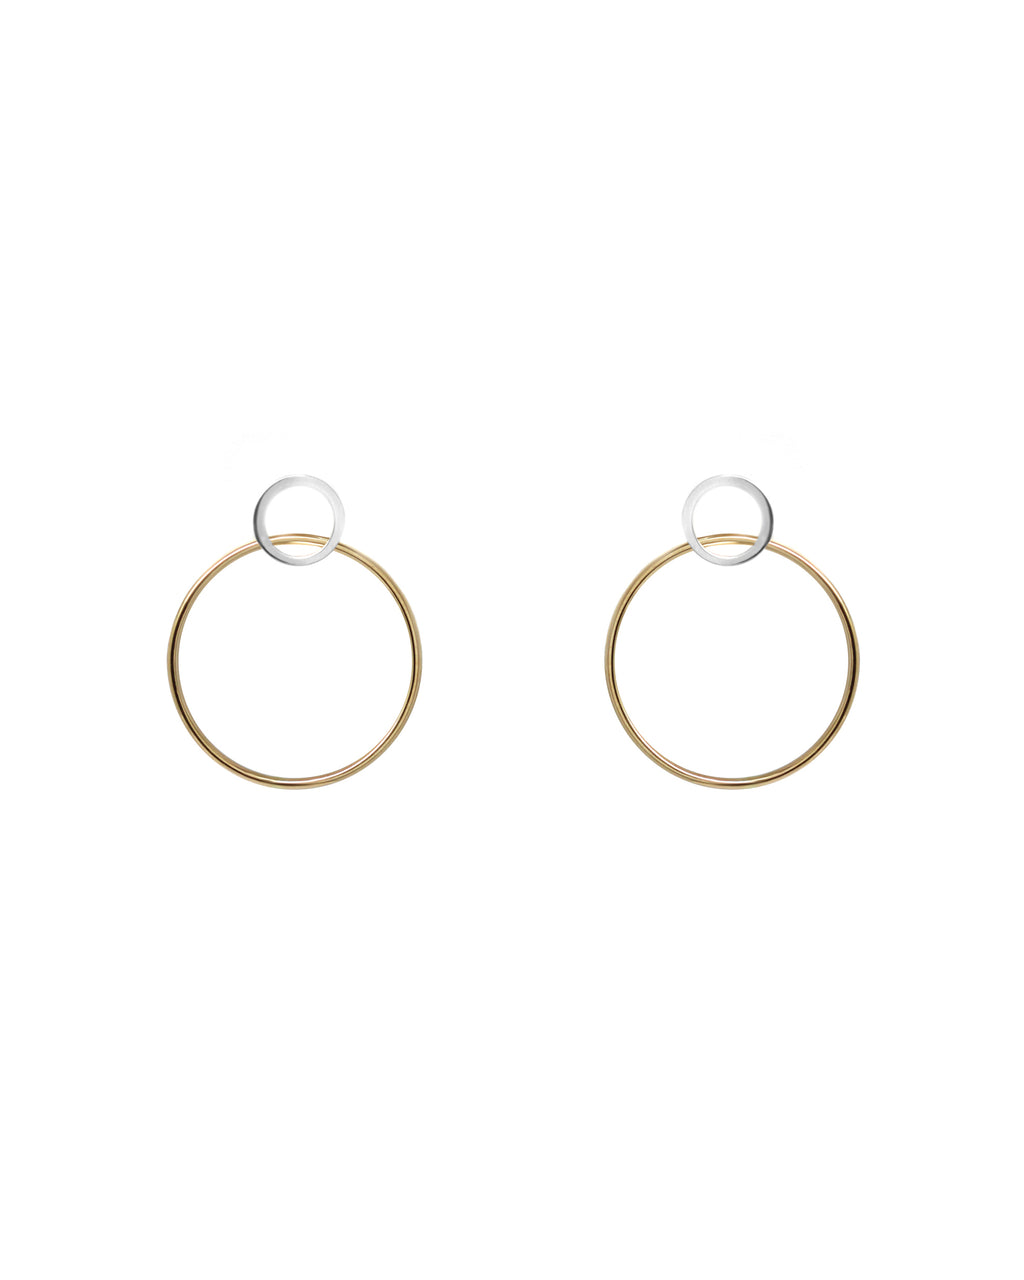 Hoop earrings // 2 tones